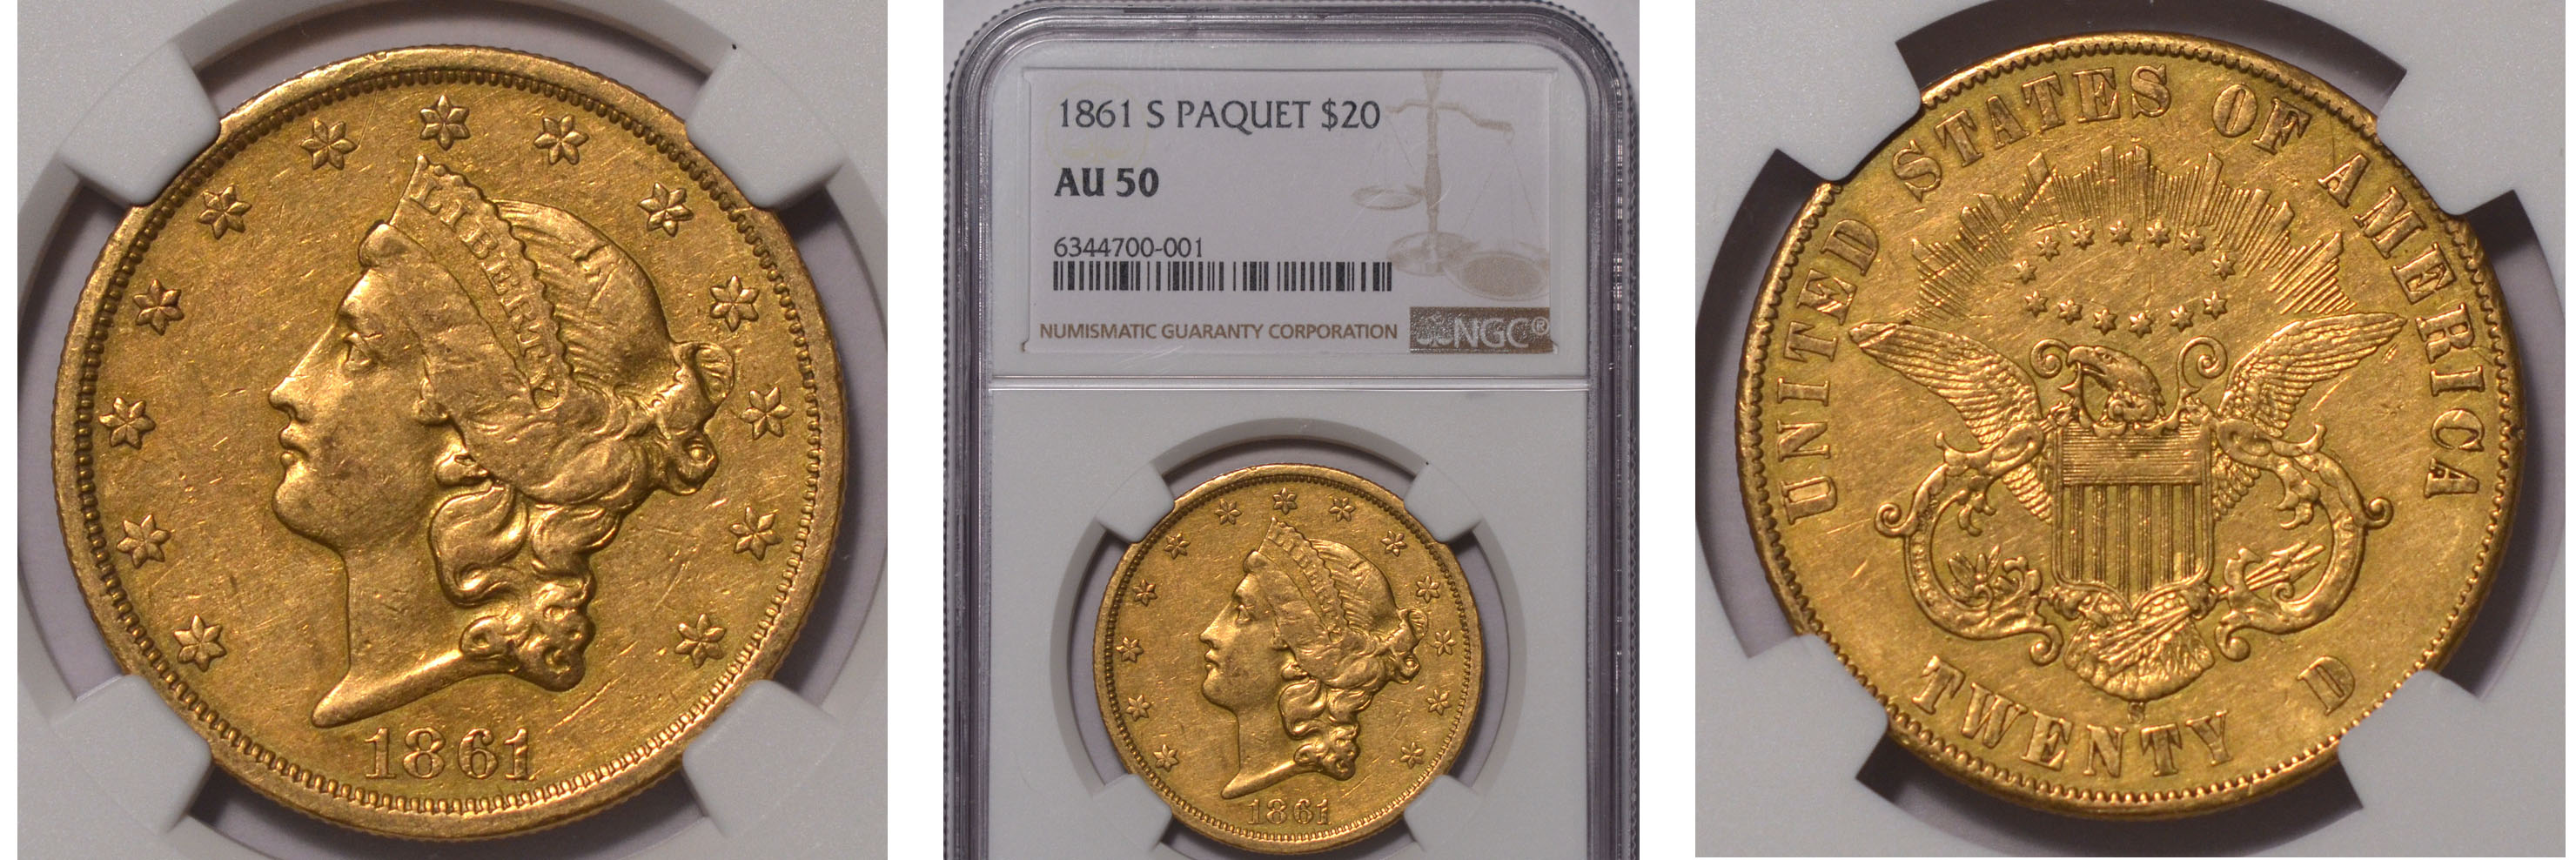 1861-S Paquet Double Eagle $20 NGC AU50